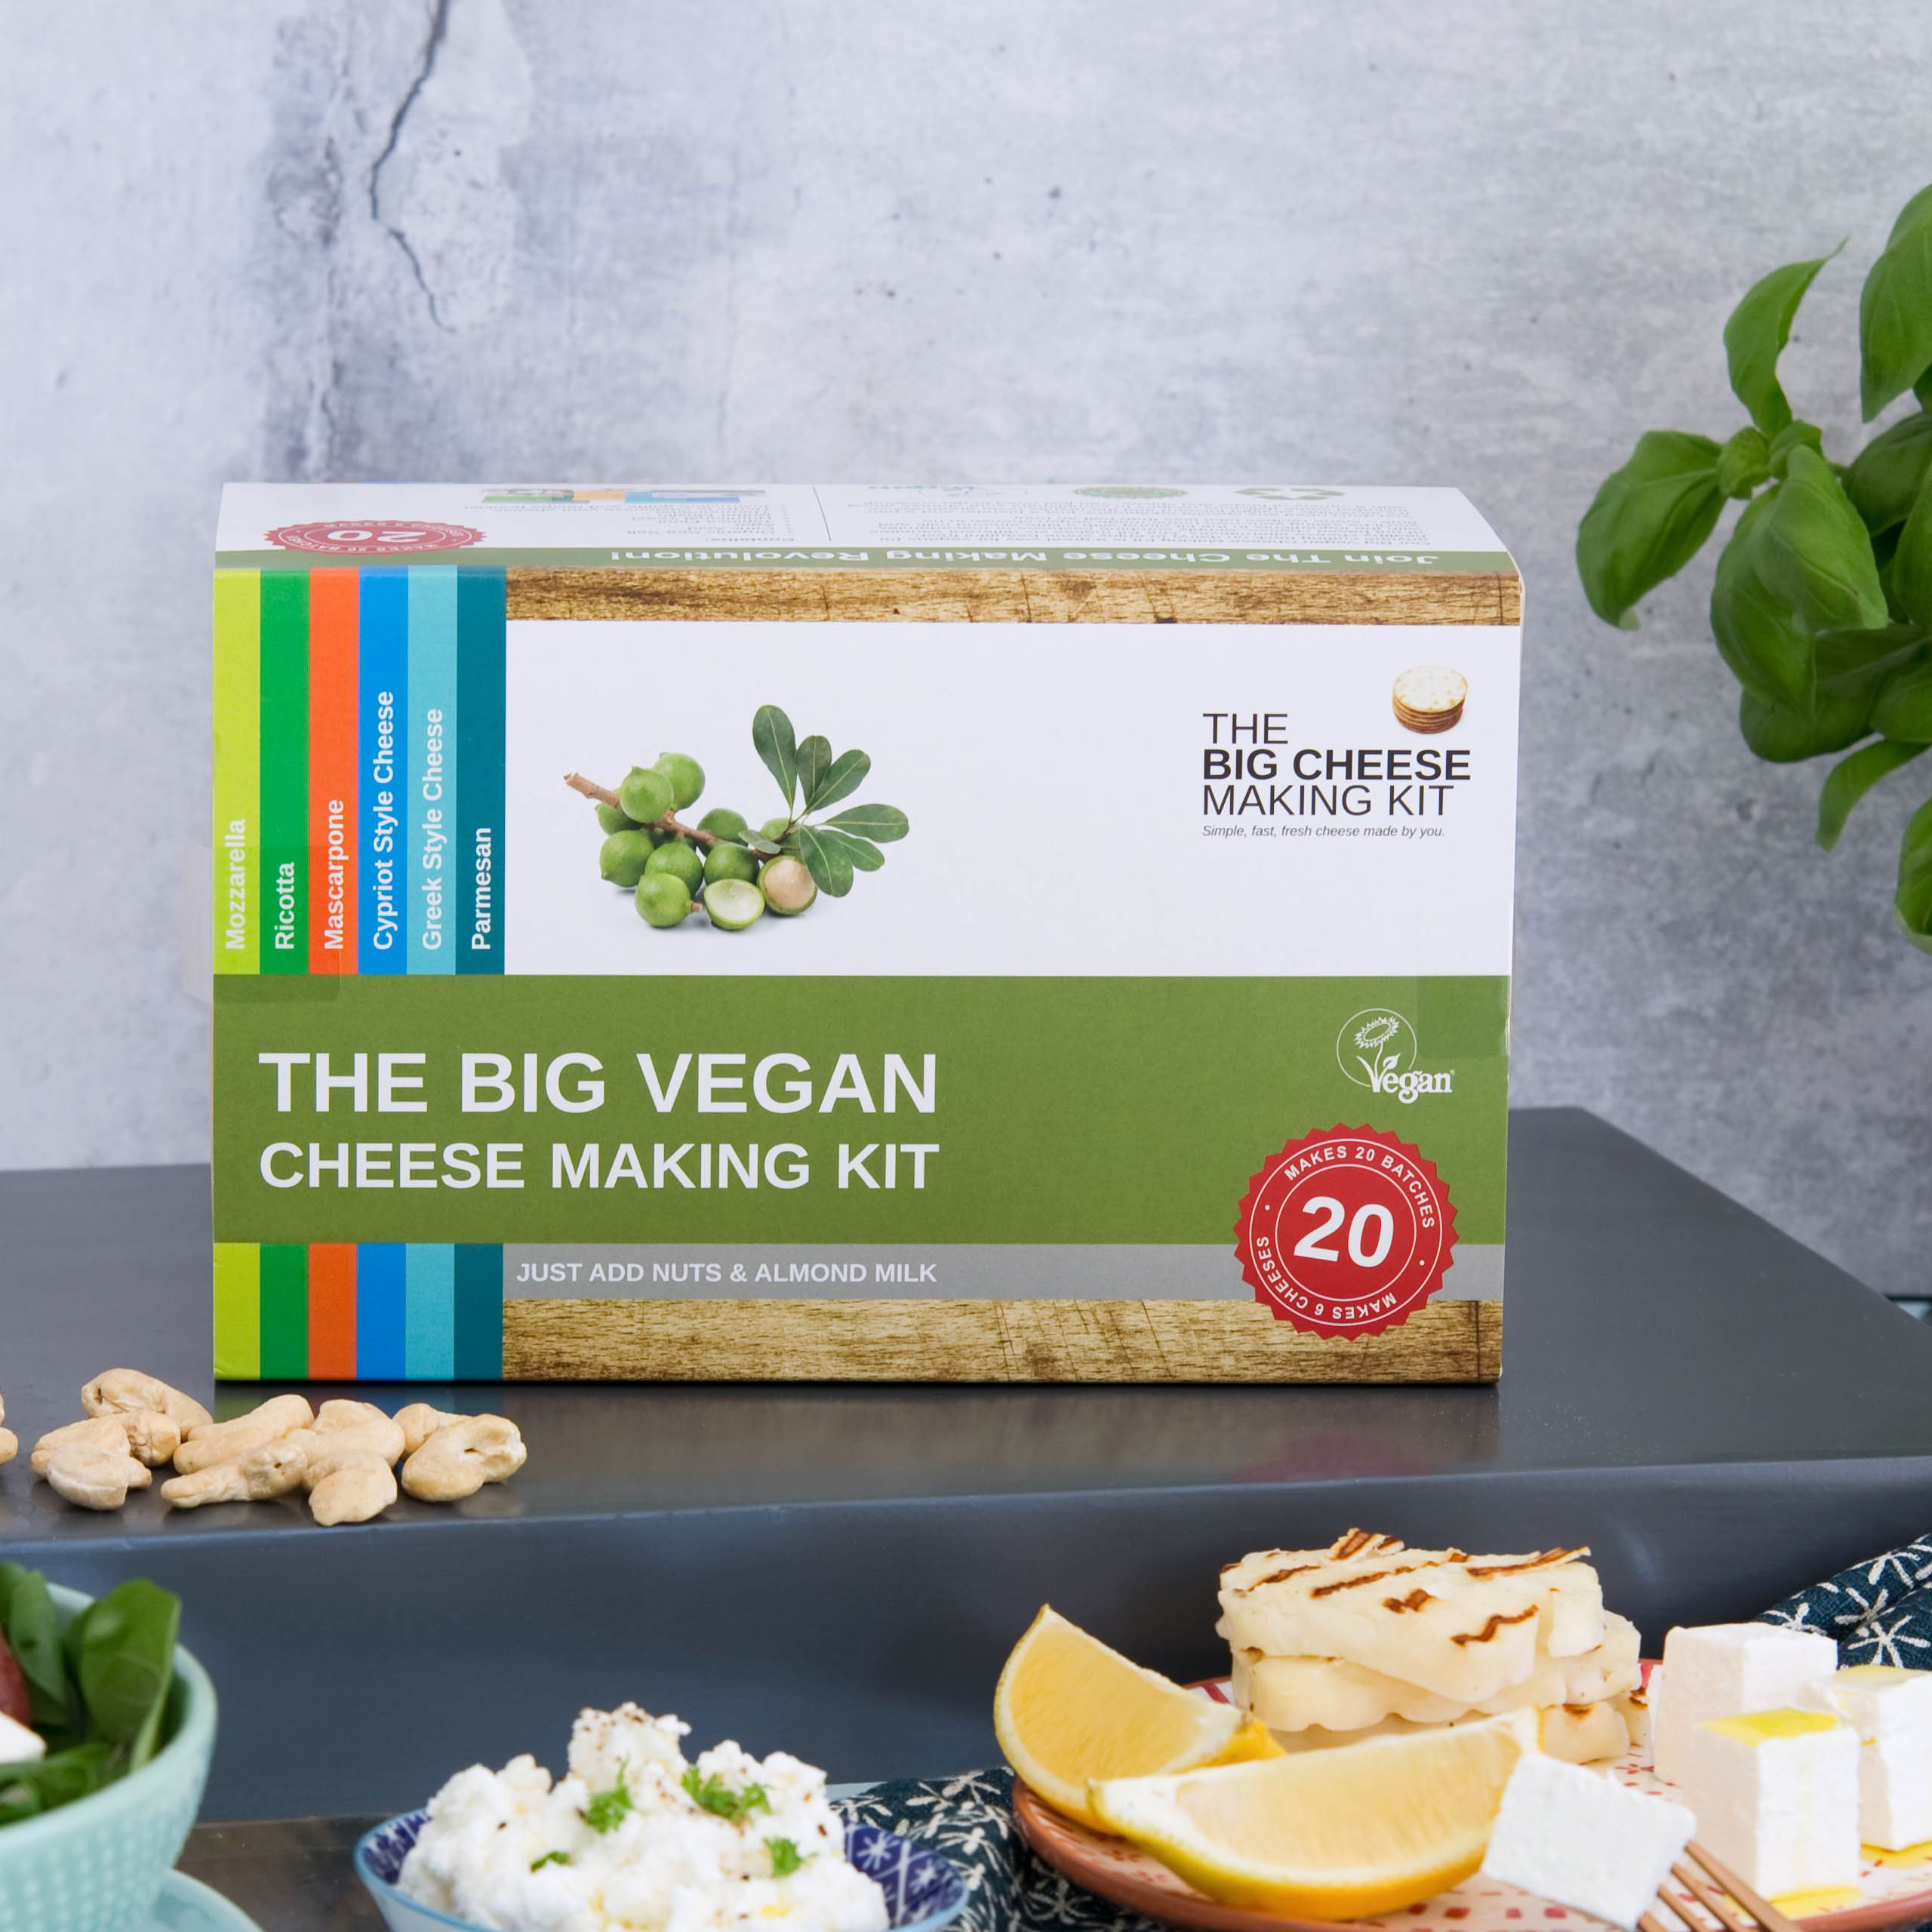 The Big Vegan Cheese Making Kit